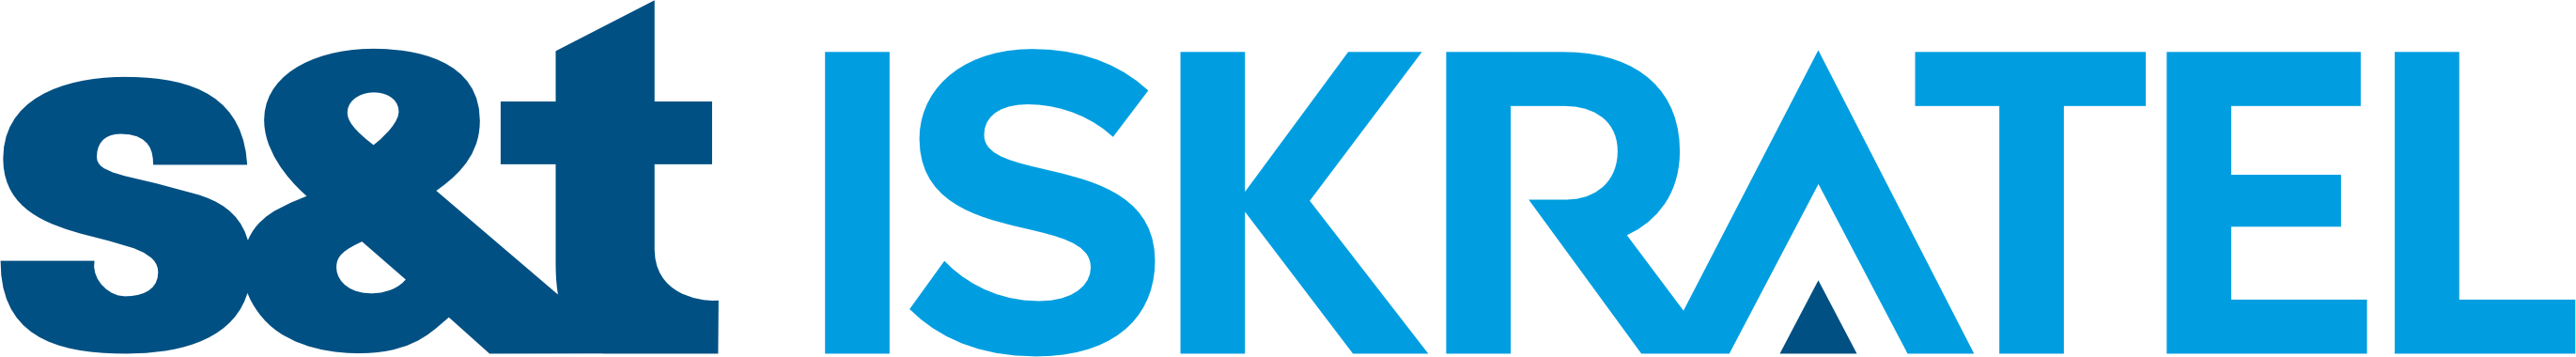 Logo II